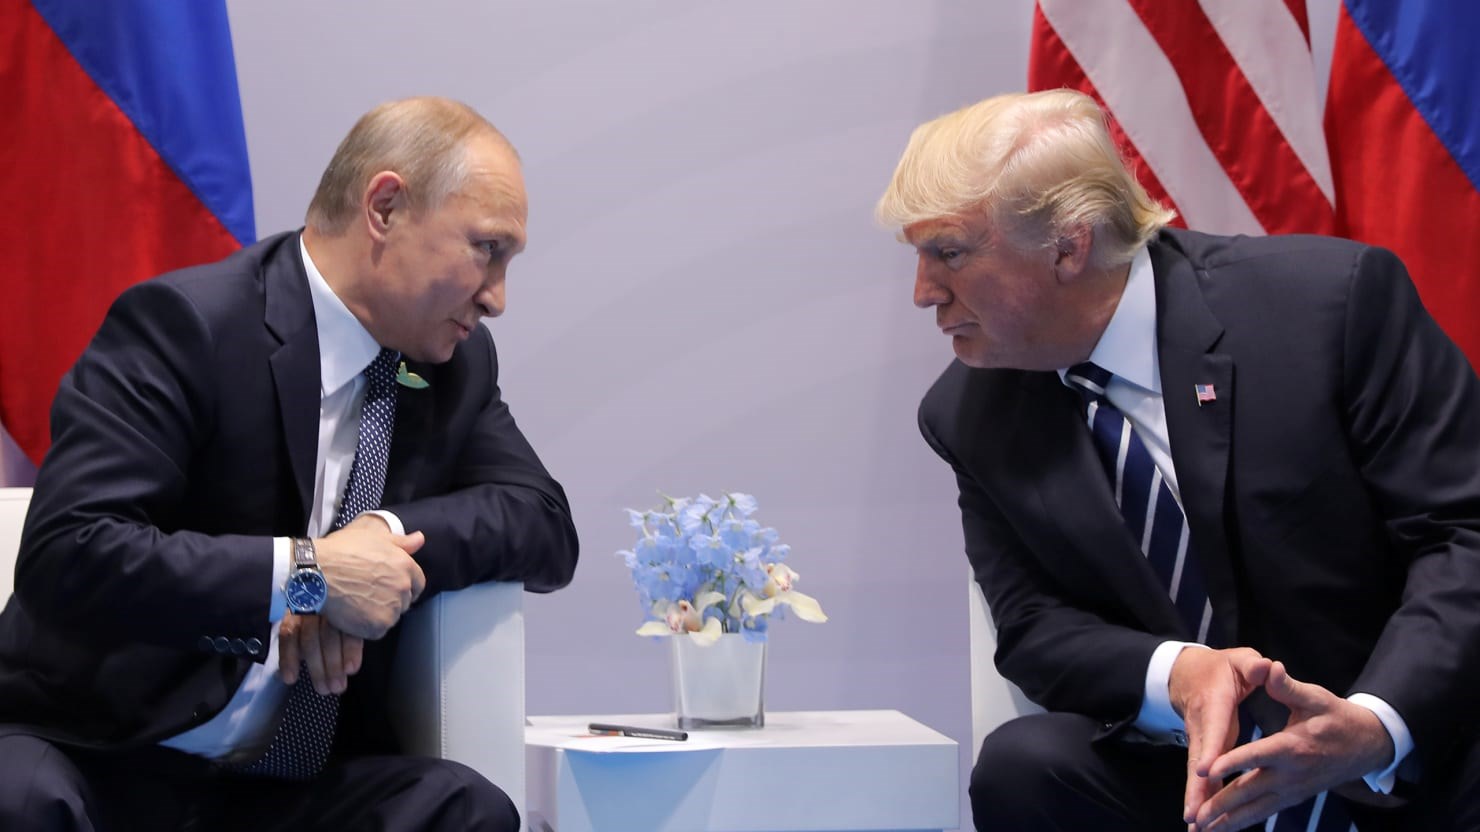 Ο Τραμπ ρώτησε τον Πούτιν αν υπήρξε ρωσική ανάμειξη στις αμερικανικές εκλογές